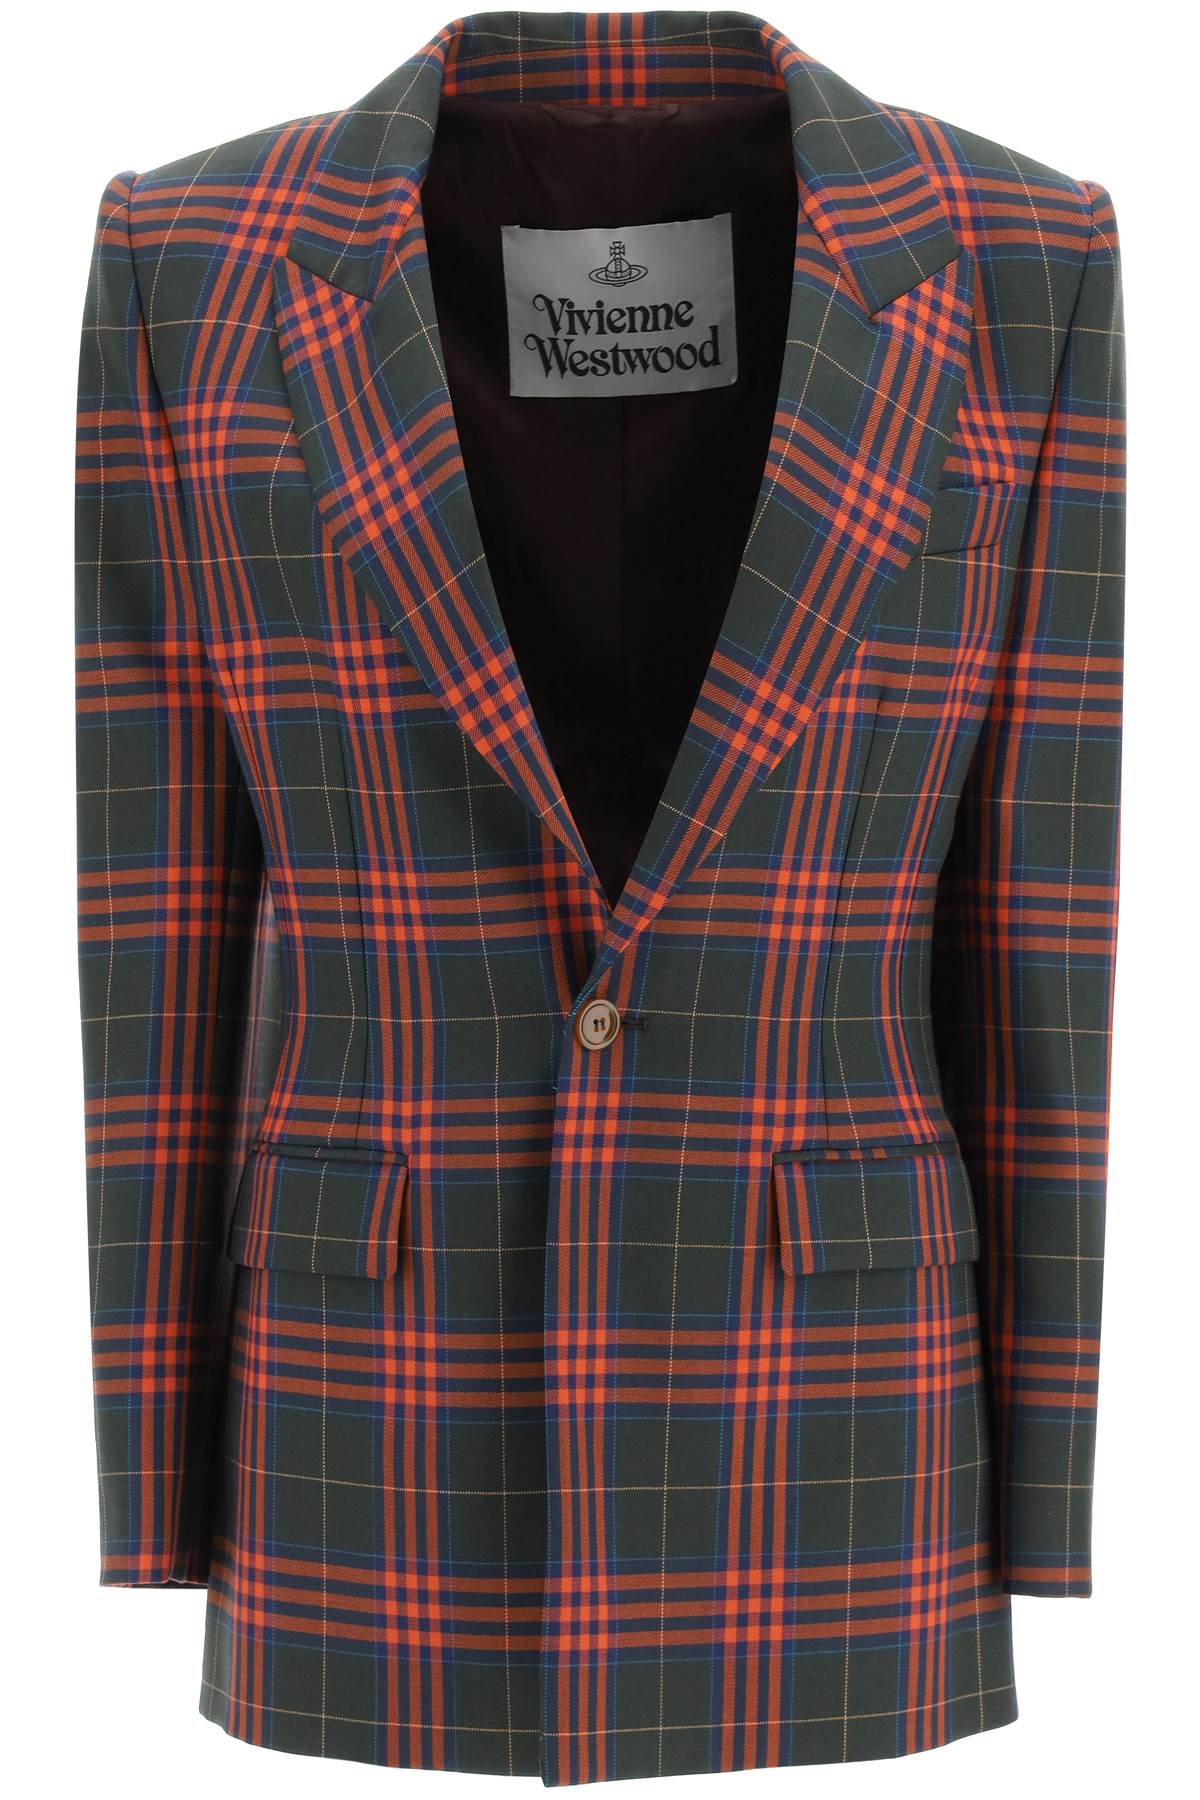 Vivienne Westwood lelio Tartan Wool Jacket